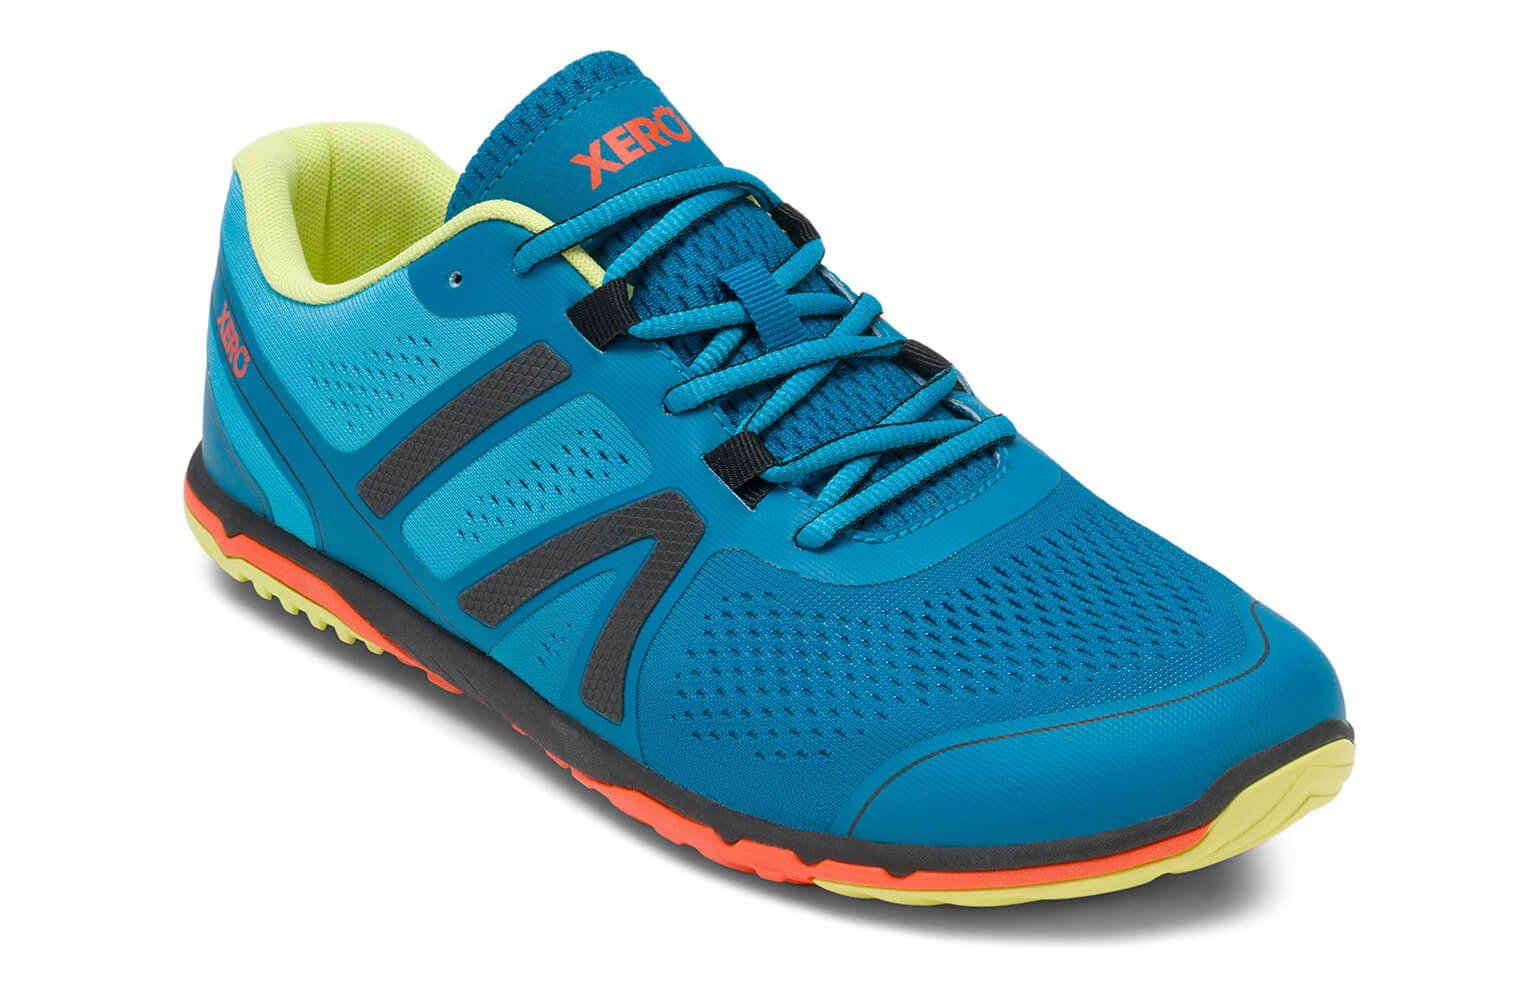 Xero Shoes Men's HFS Running Shoes - Zero Drop, Lightweight & Barefoot Feel